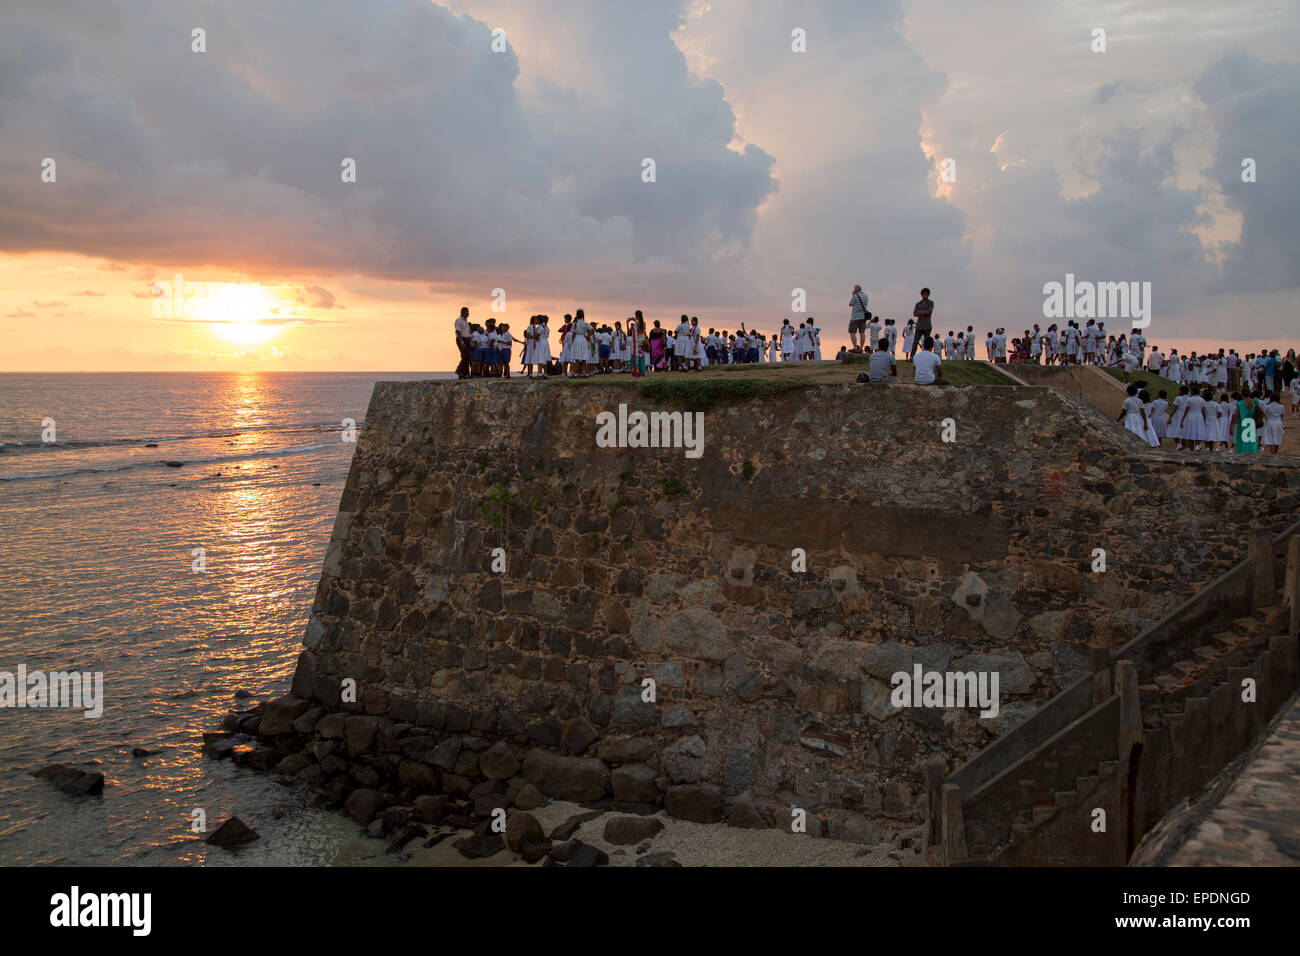 Schulgruppe auf Wällen der Festung bei Sonnenuntergang in die historische Stadt Galle, Sri Lanka, Asien Stockfoto